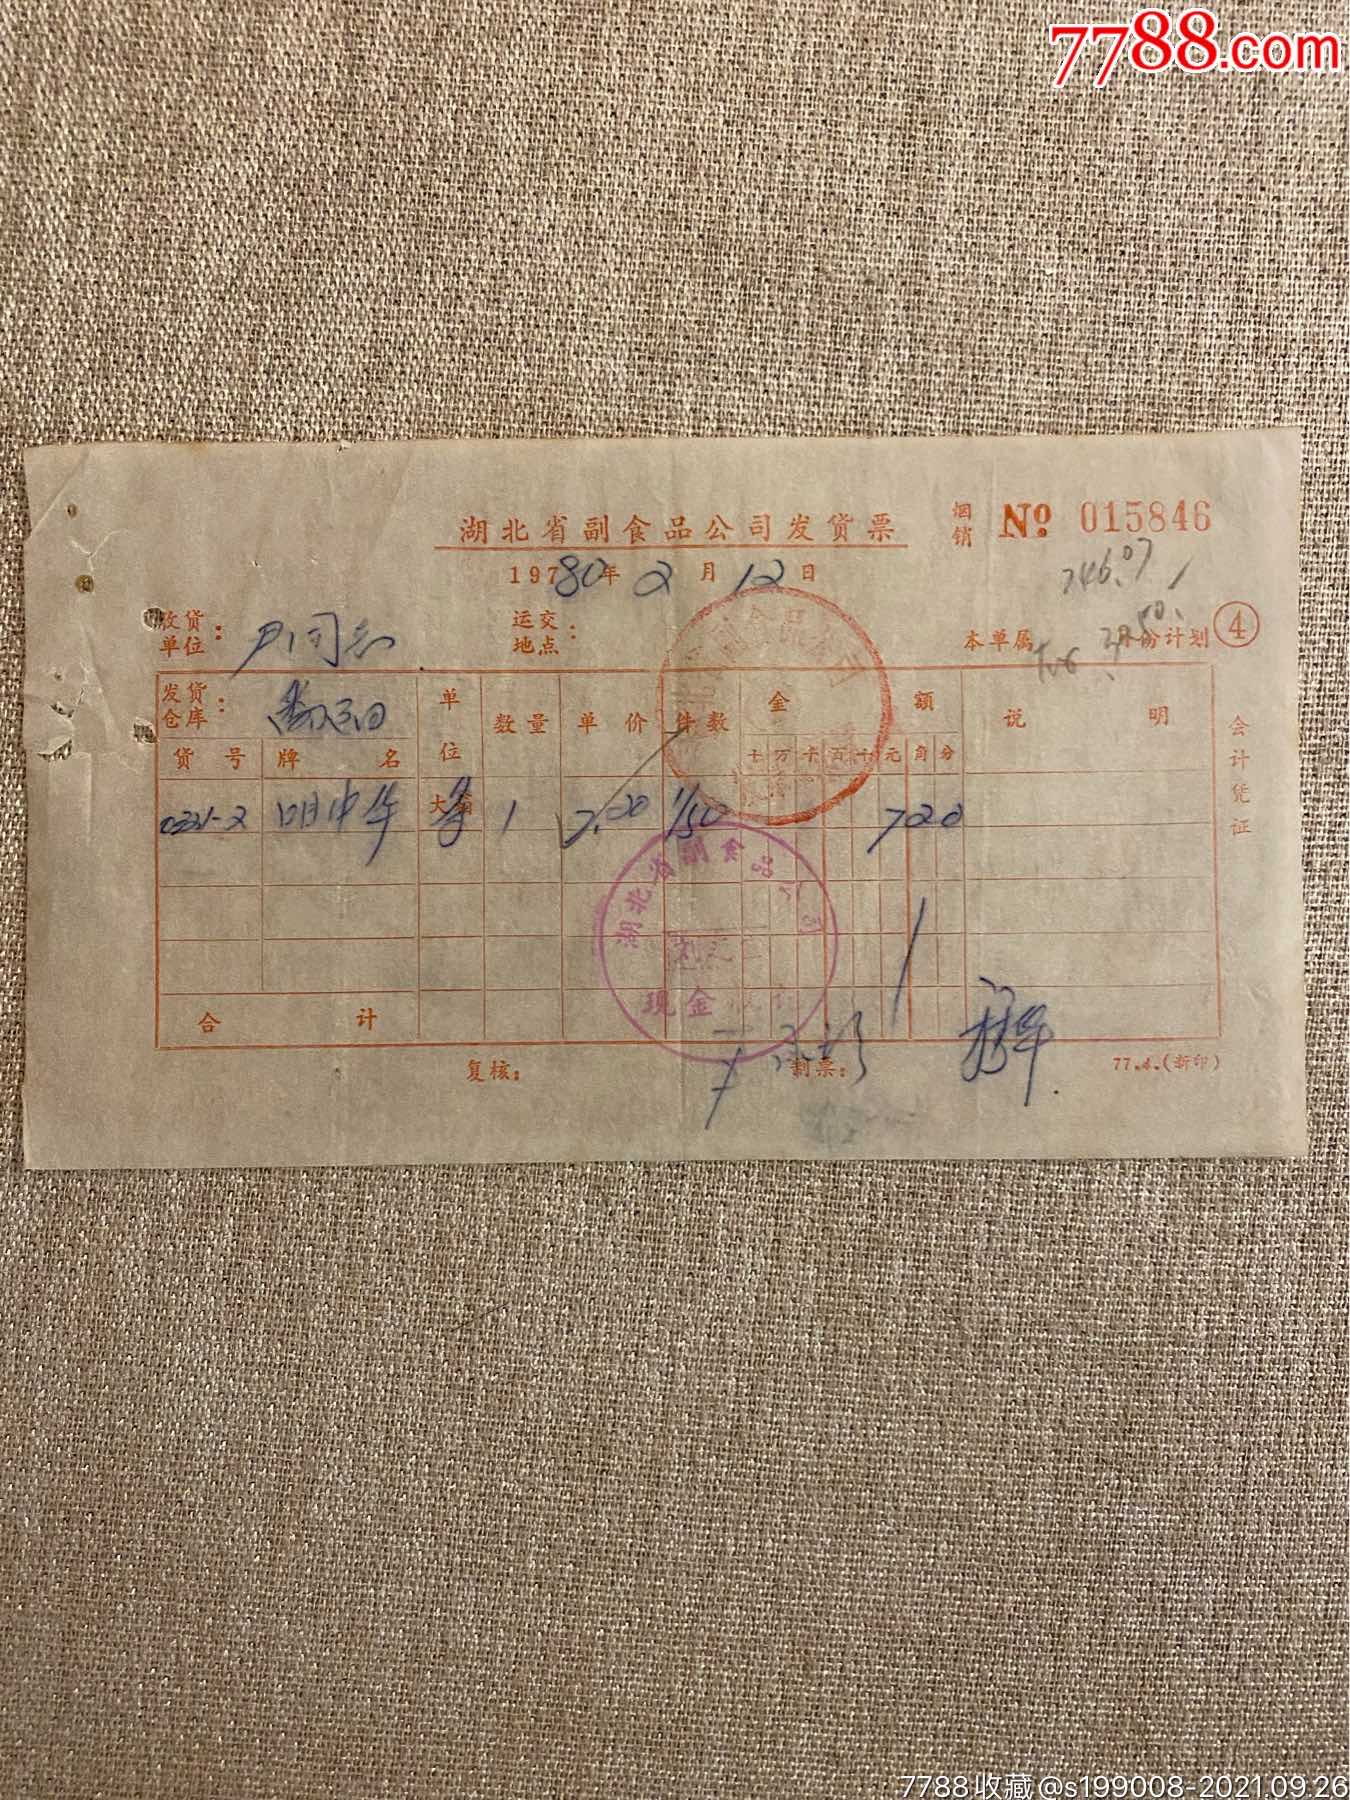 1980年中华烟发票